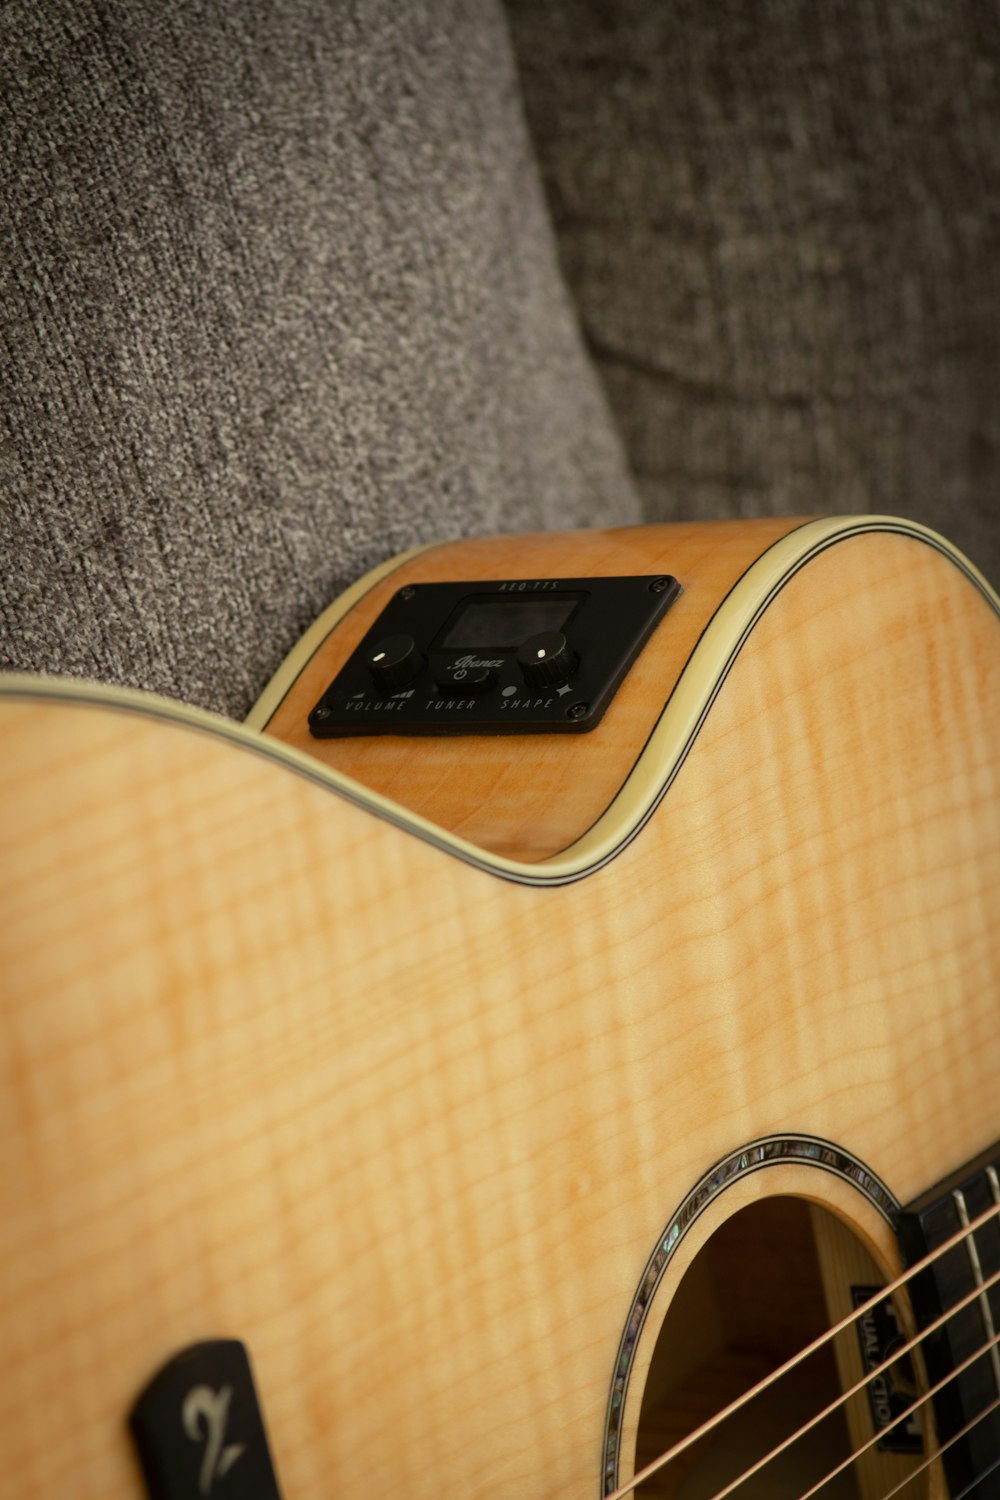 um close up de uma guitarra com um telefone celular em cima dela